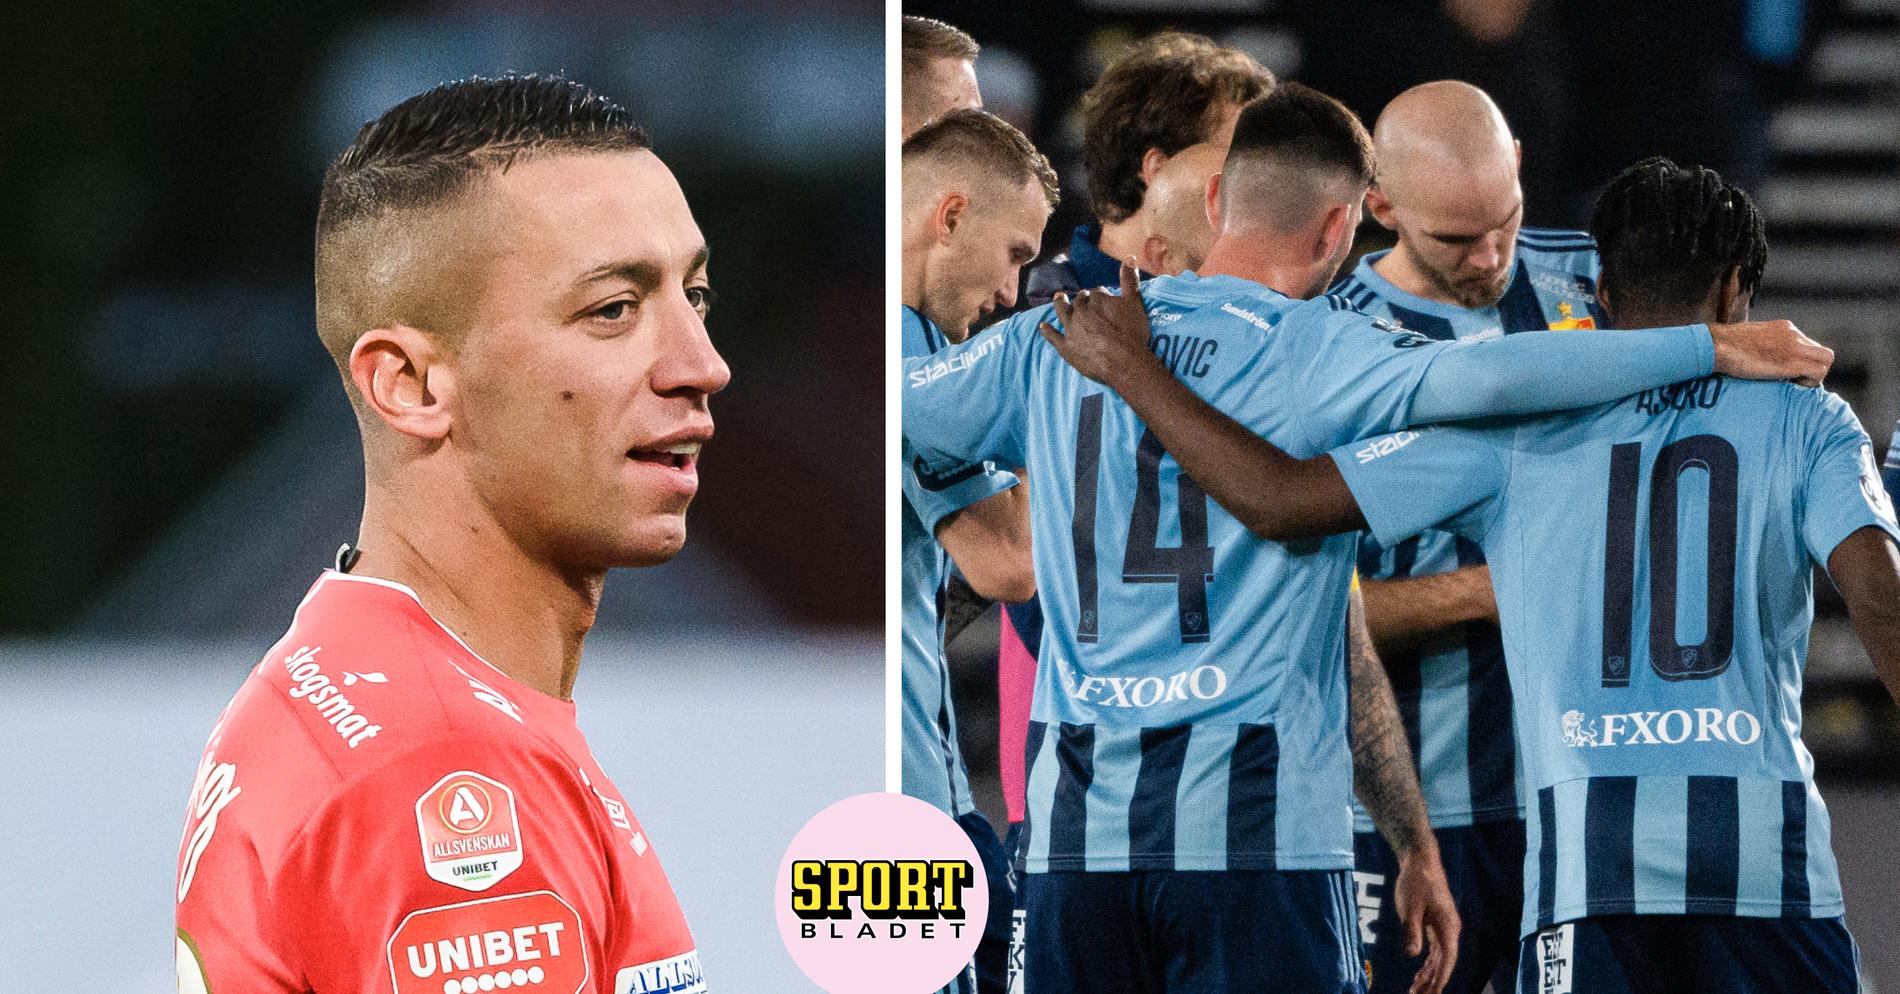 Djurgården Fotboll: Profilens känga efter segern mot Djurgården: ”Var på okänd plats”